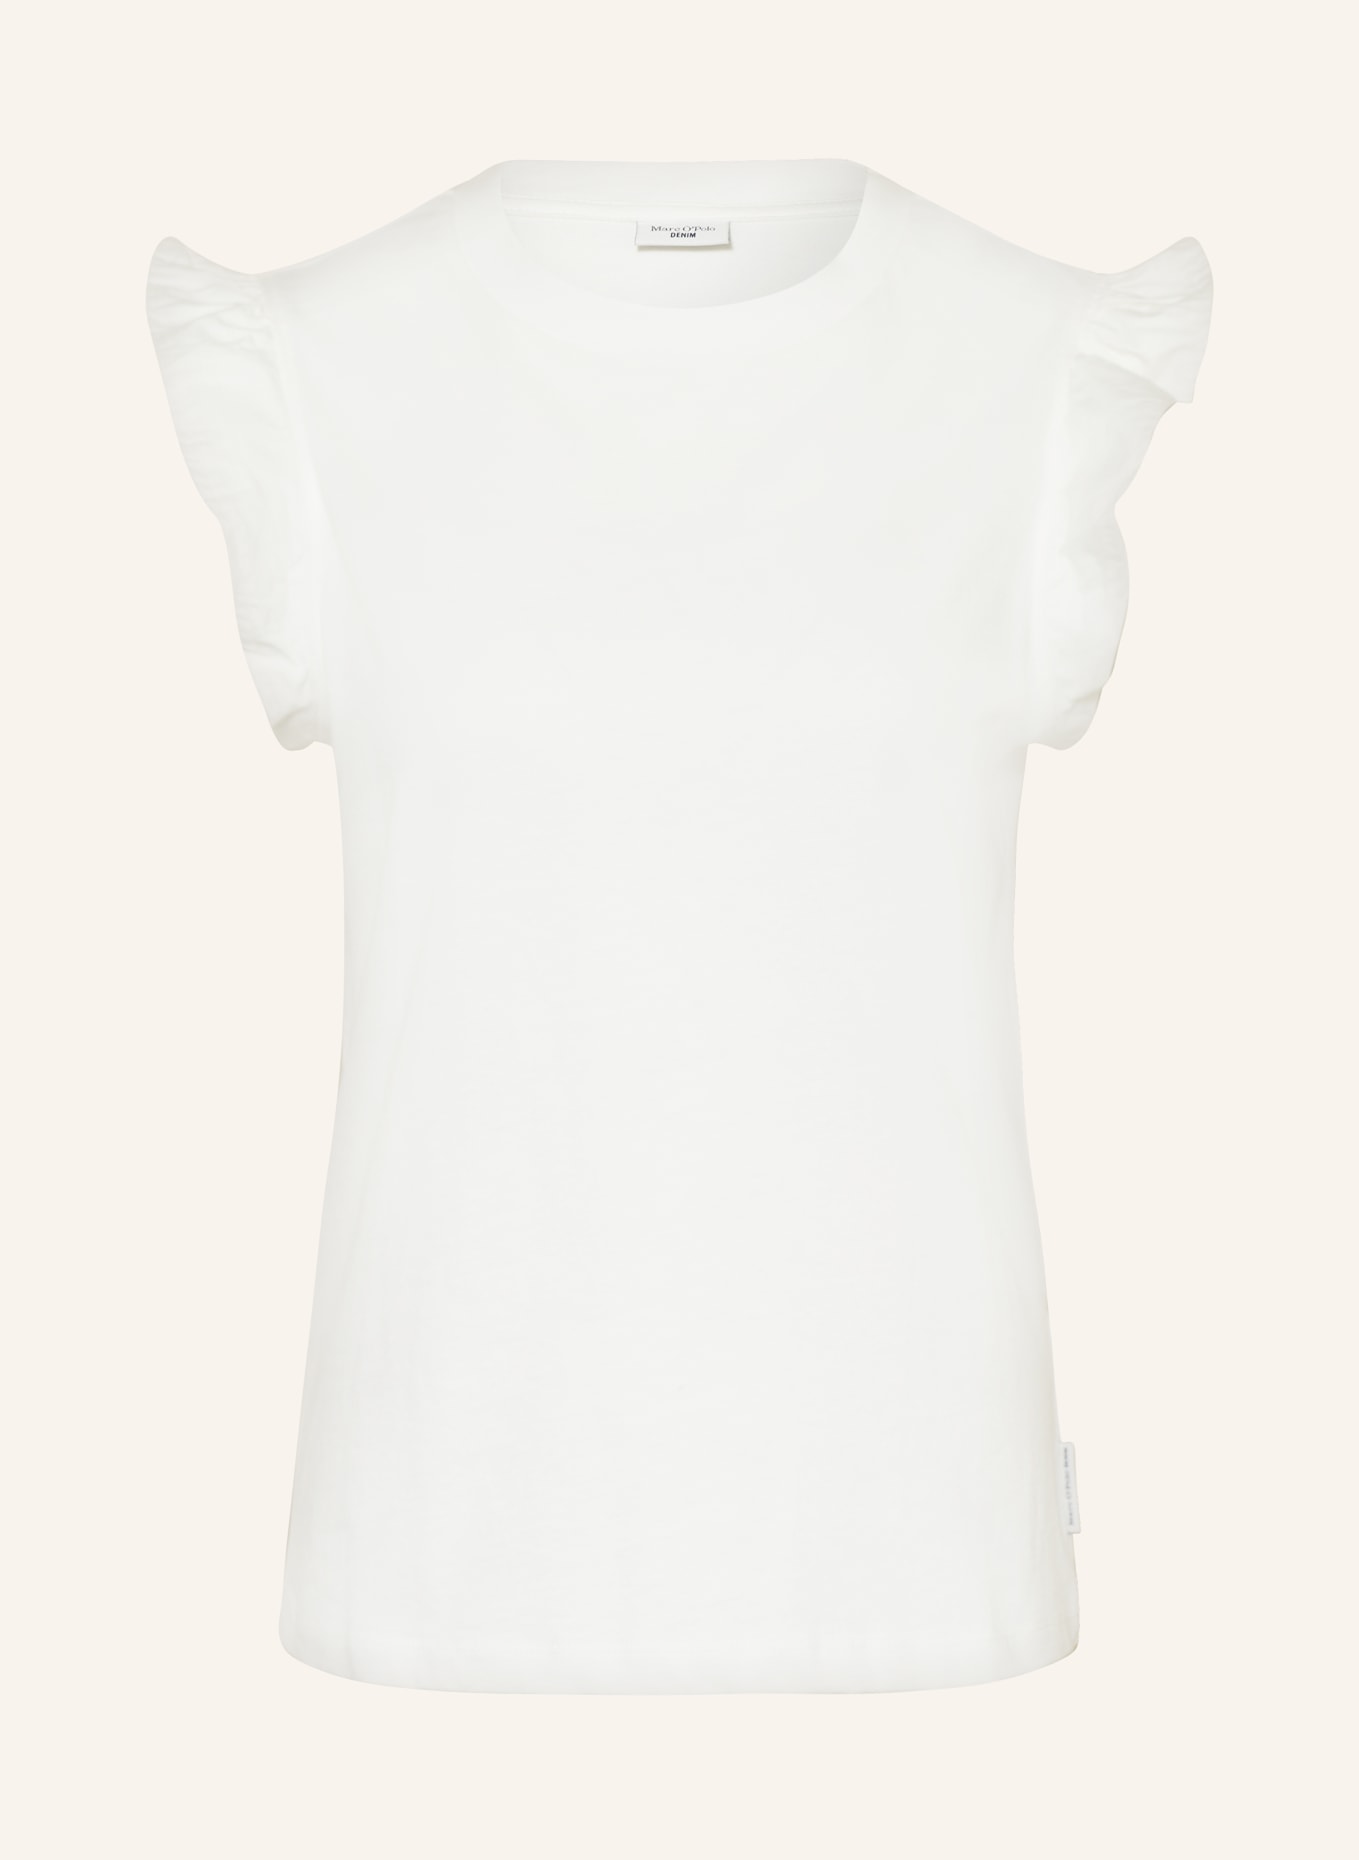 Marc O'Polo DENIM T-shirt, Color: WHITE (Image 1)